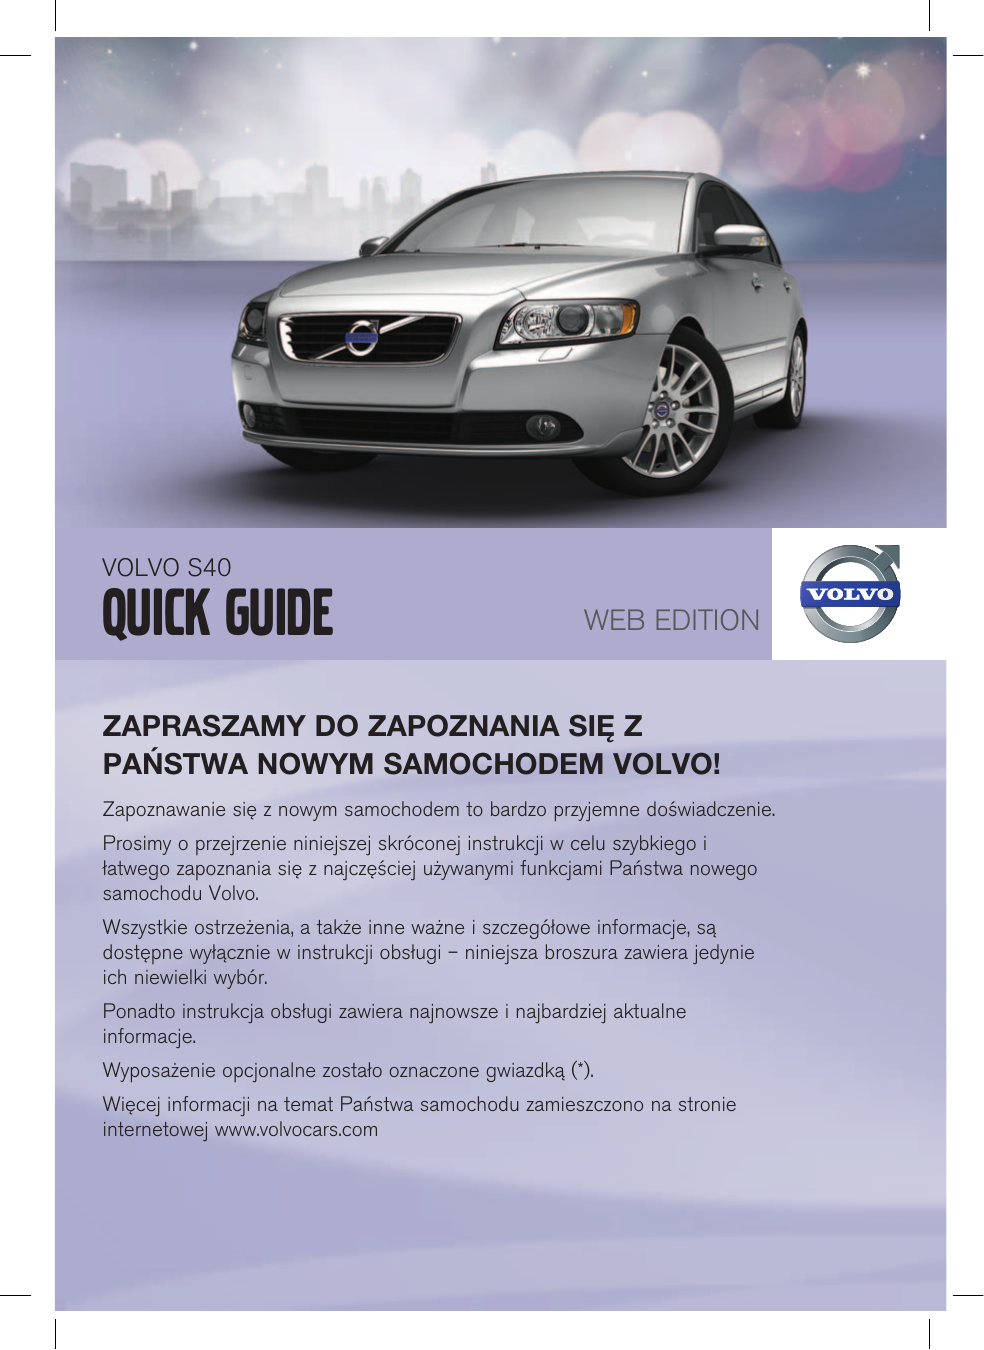 Volvo S40 2011 Quick Guide | Manualzz